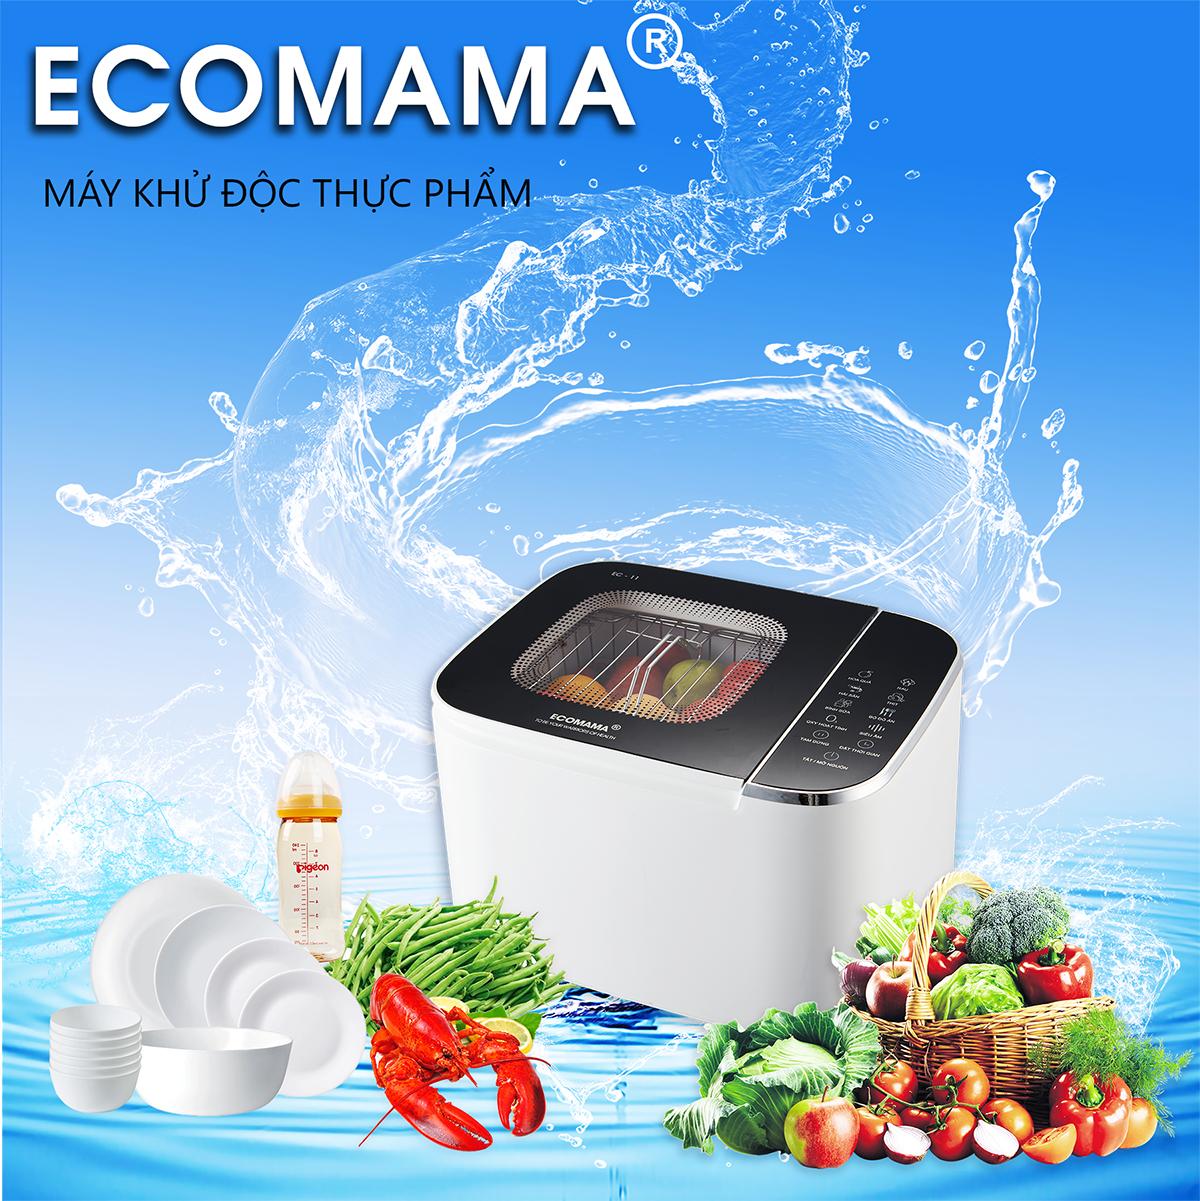 Máy khử độc thưc phẩm Ecomama